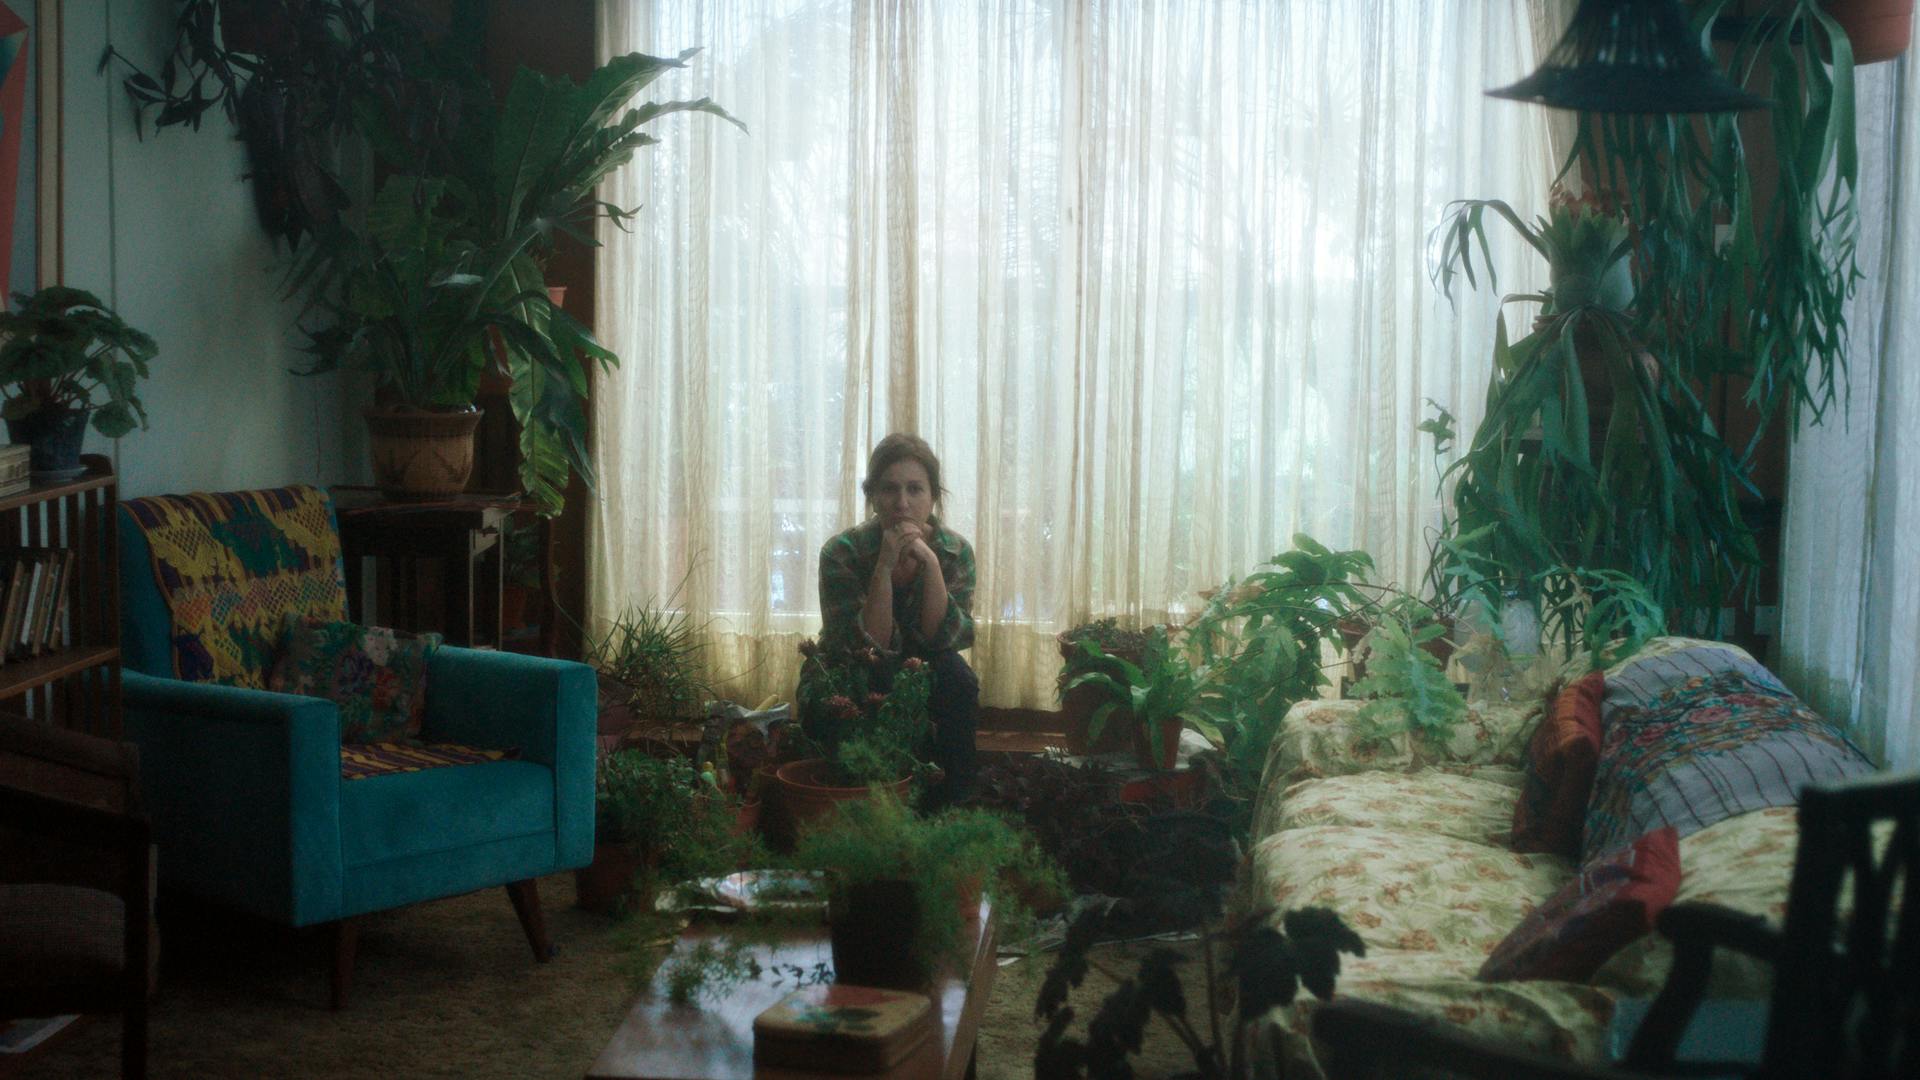 Uma mulher está sentada em uma sala de estar, com poltronas, sofá e muitas plantas ao redor.